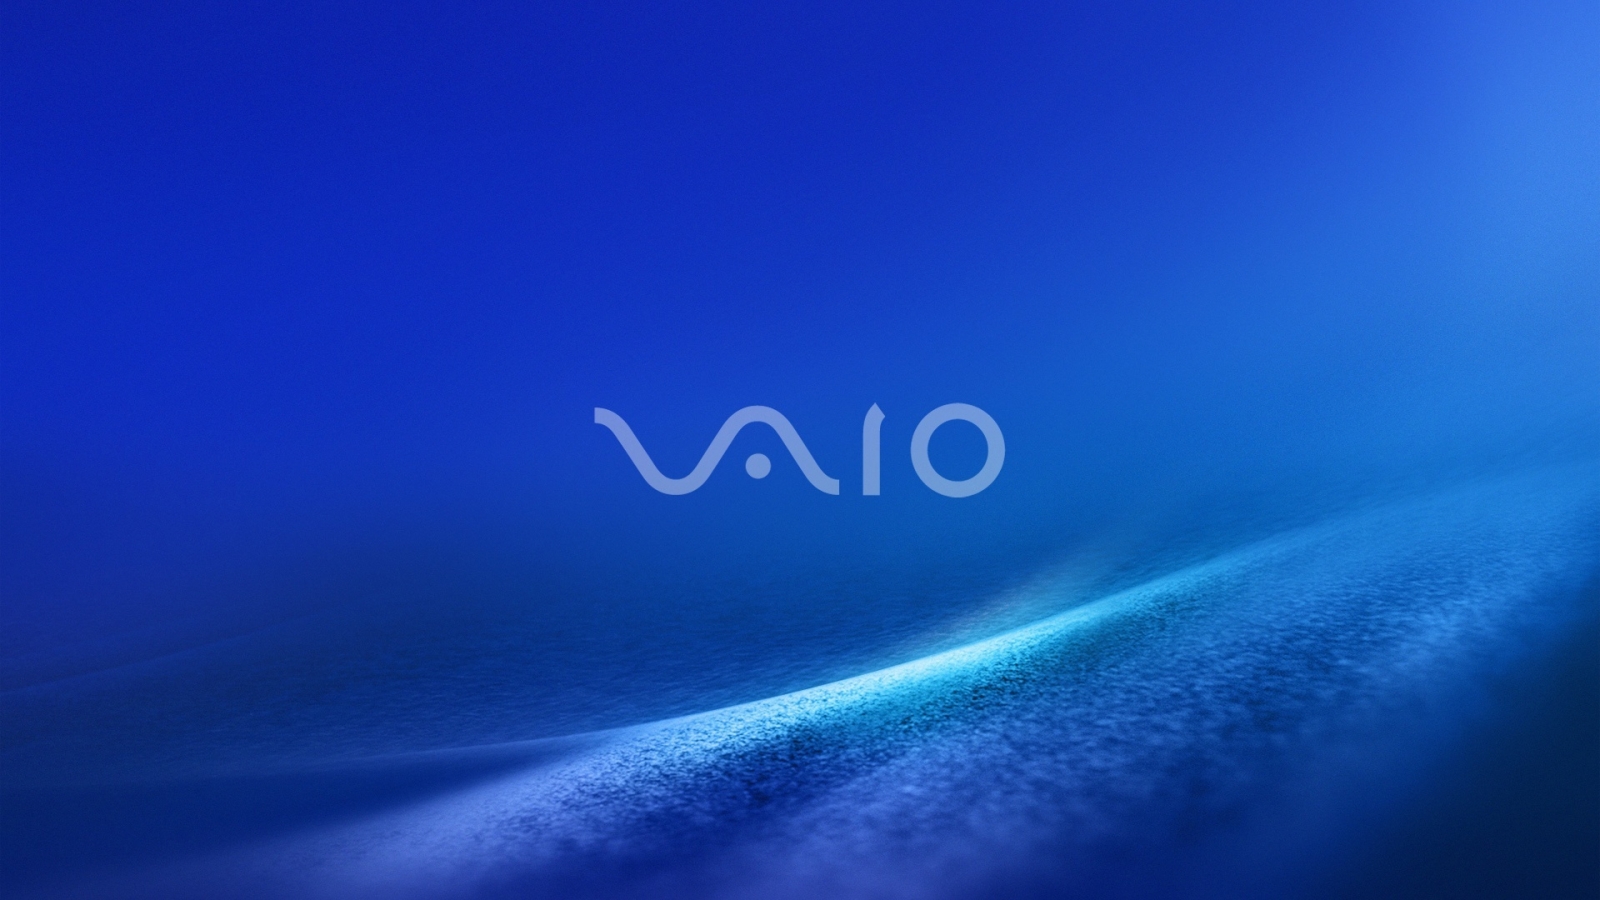 Vaio Dark Blue for 1600 x 900 HDTV resolution